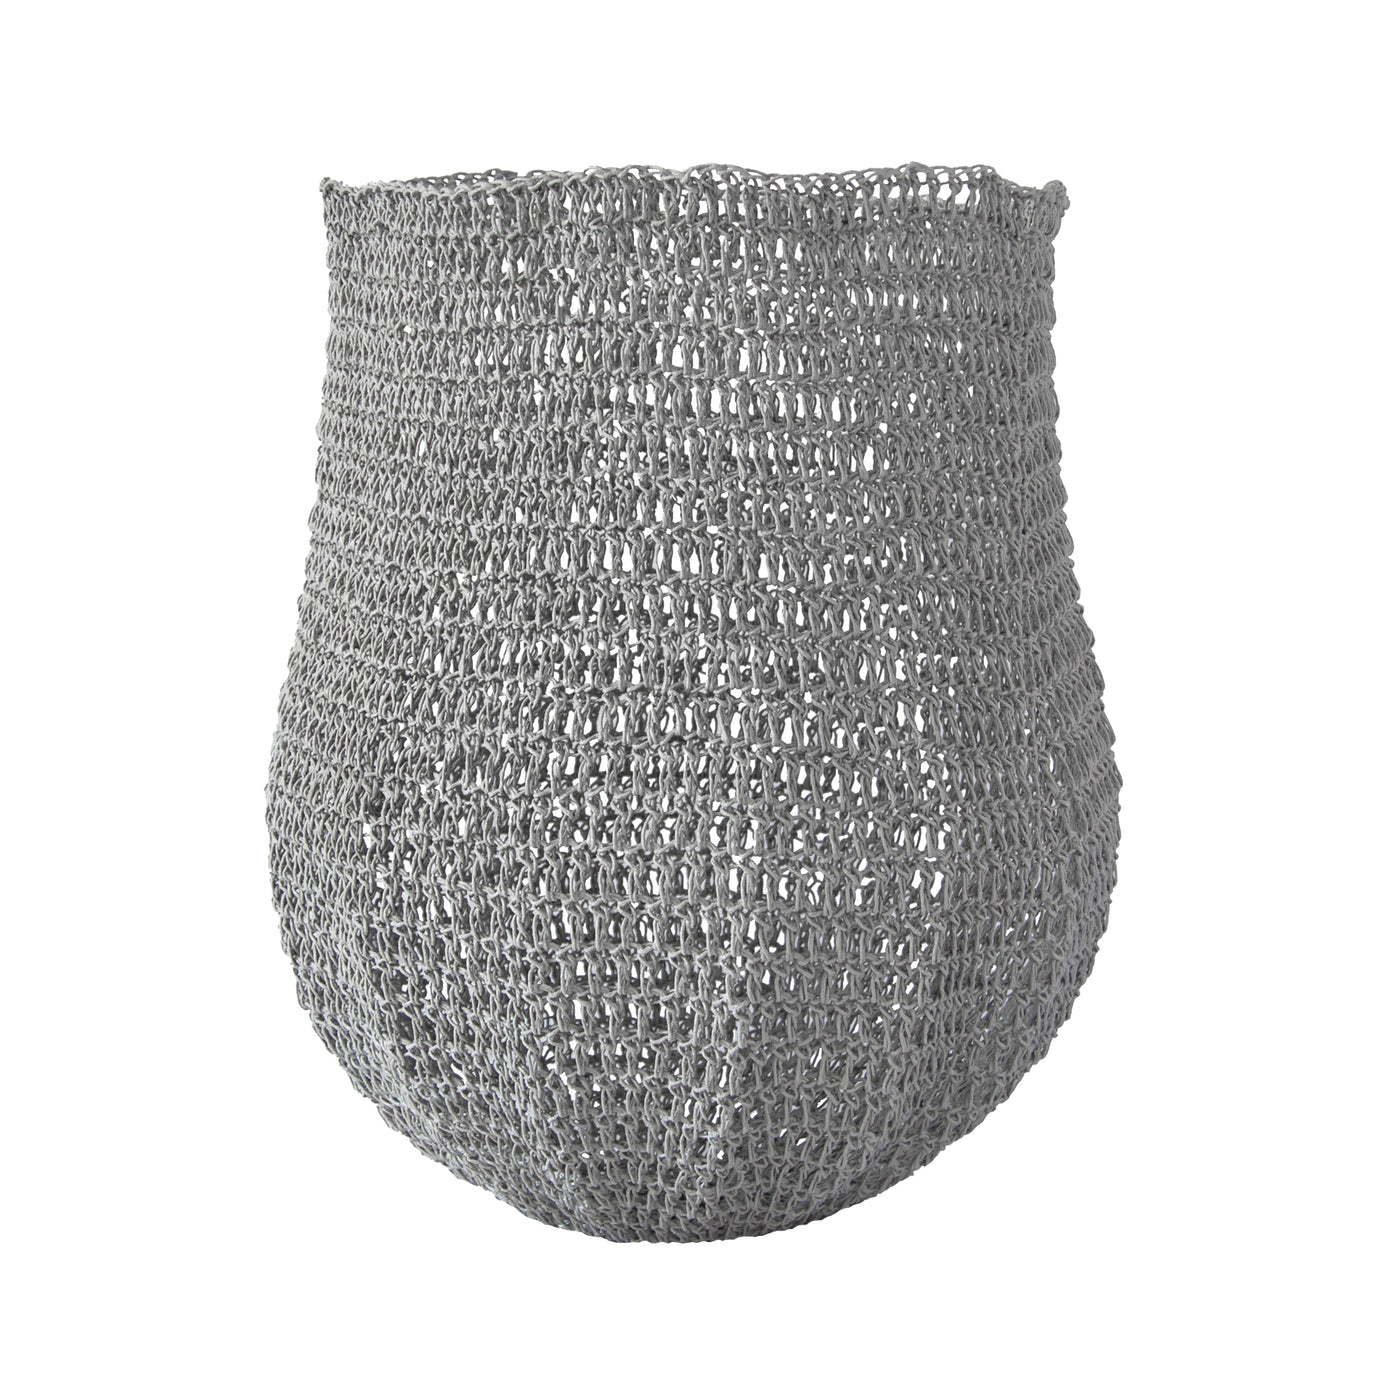 Crochet Basket (large | silver grey) by Safari Fusion www.safarifusion.com.au